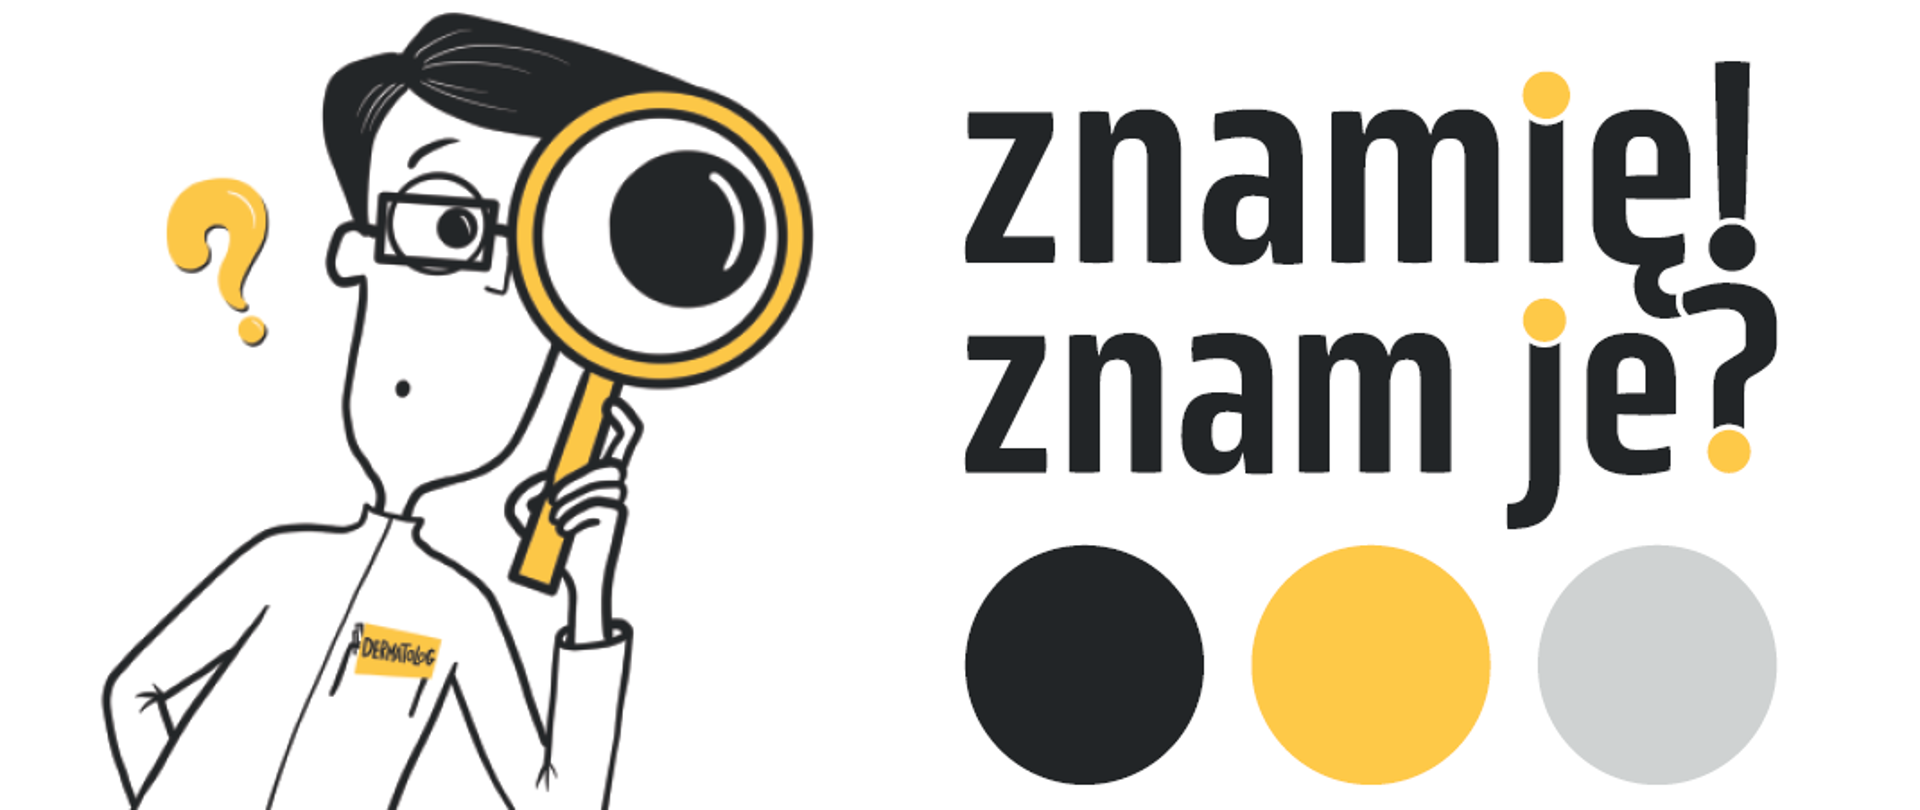 logo programu edukacyjnego: czarny napis ,,znamię! znam je?" oraz trzy kropki: czarna, żółta szara